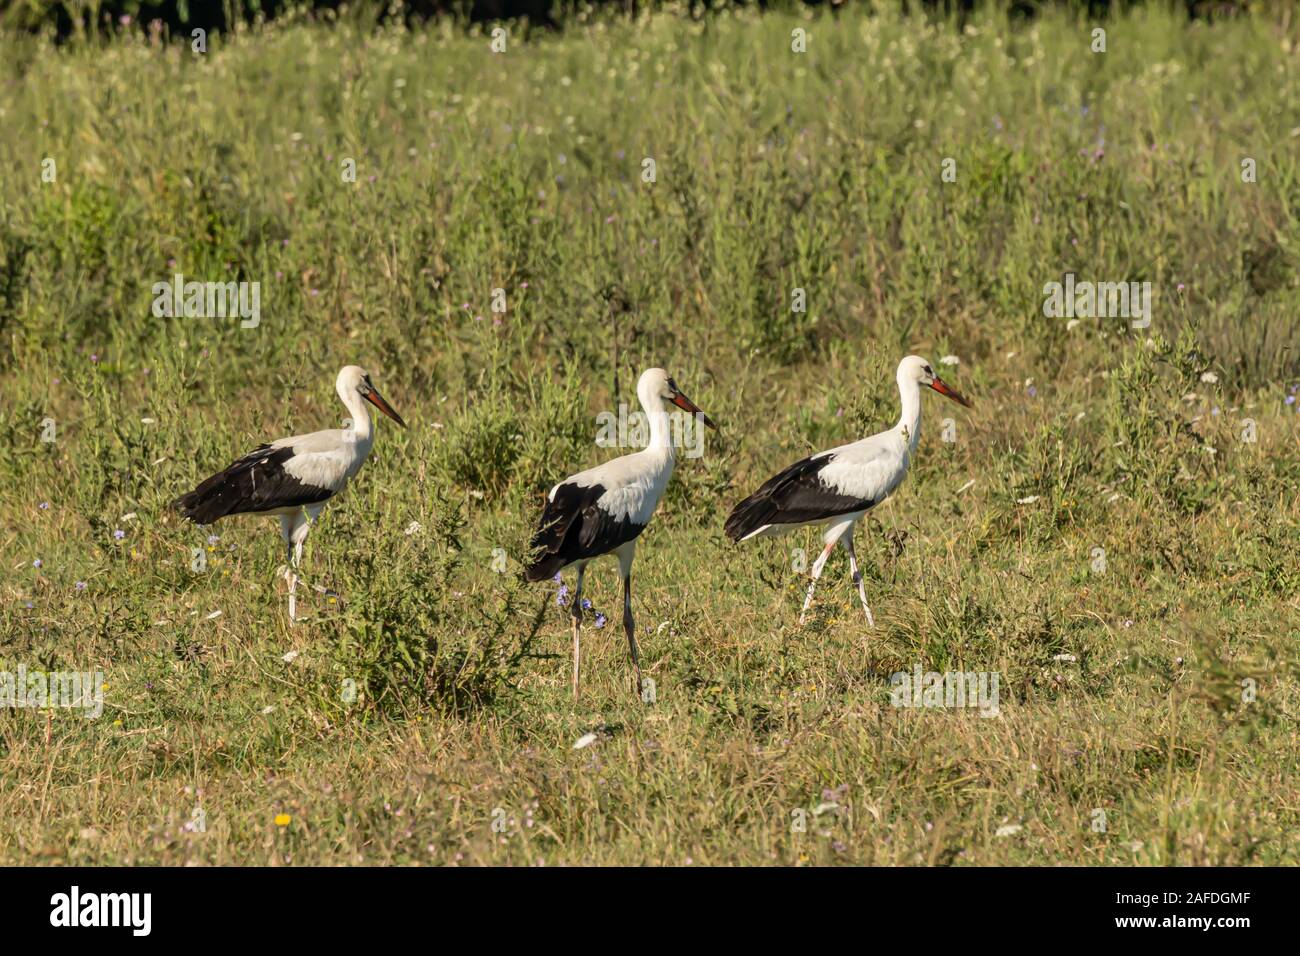 Cigogne blanche, Ciconia ciconia, grand oiseau, largement répandue. Son plumage est principalement blanc, avec sur ses ailes noires. Animalia, Chordata, Aves, CIC Banque D'Images